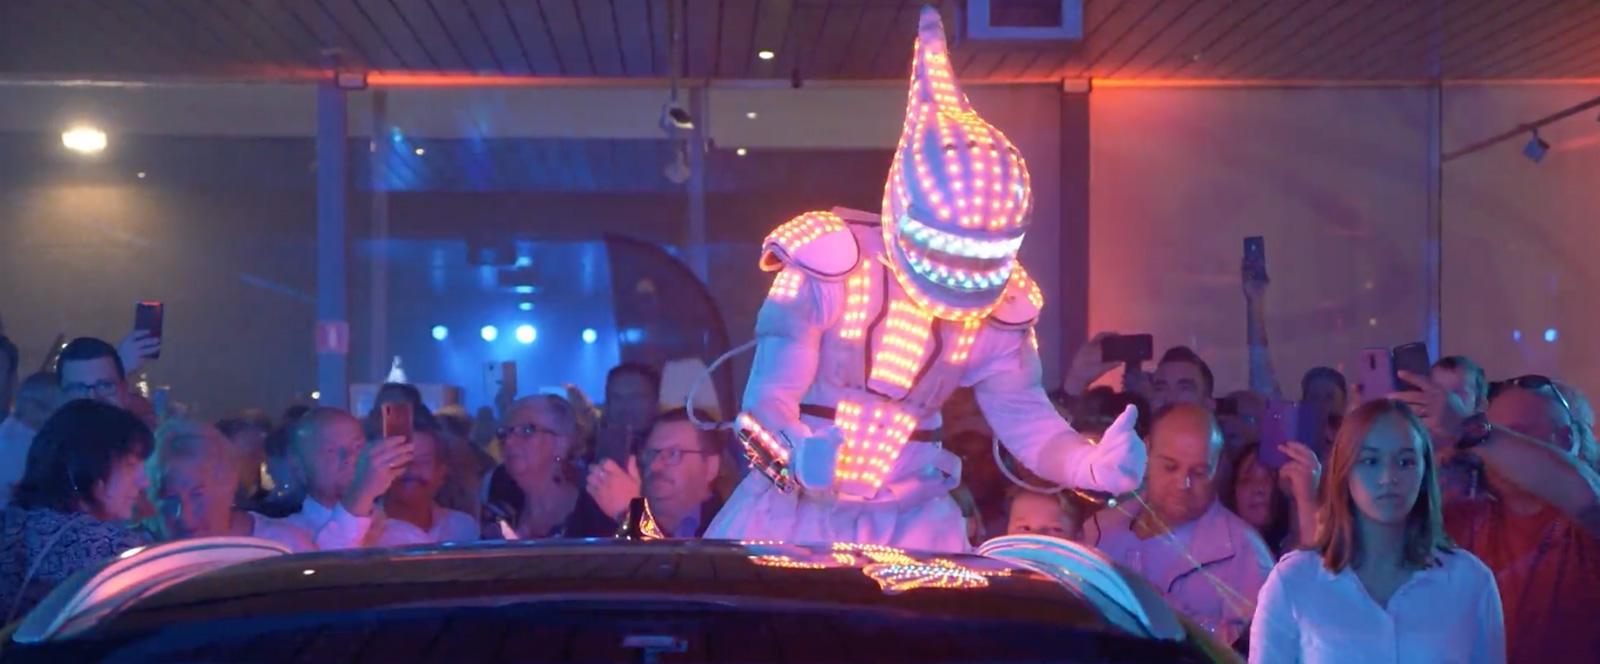 Un artiste en costume lumineux divertit la foule lors d'un événement de KIA Steveny